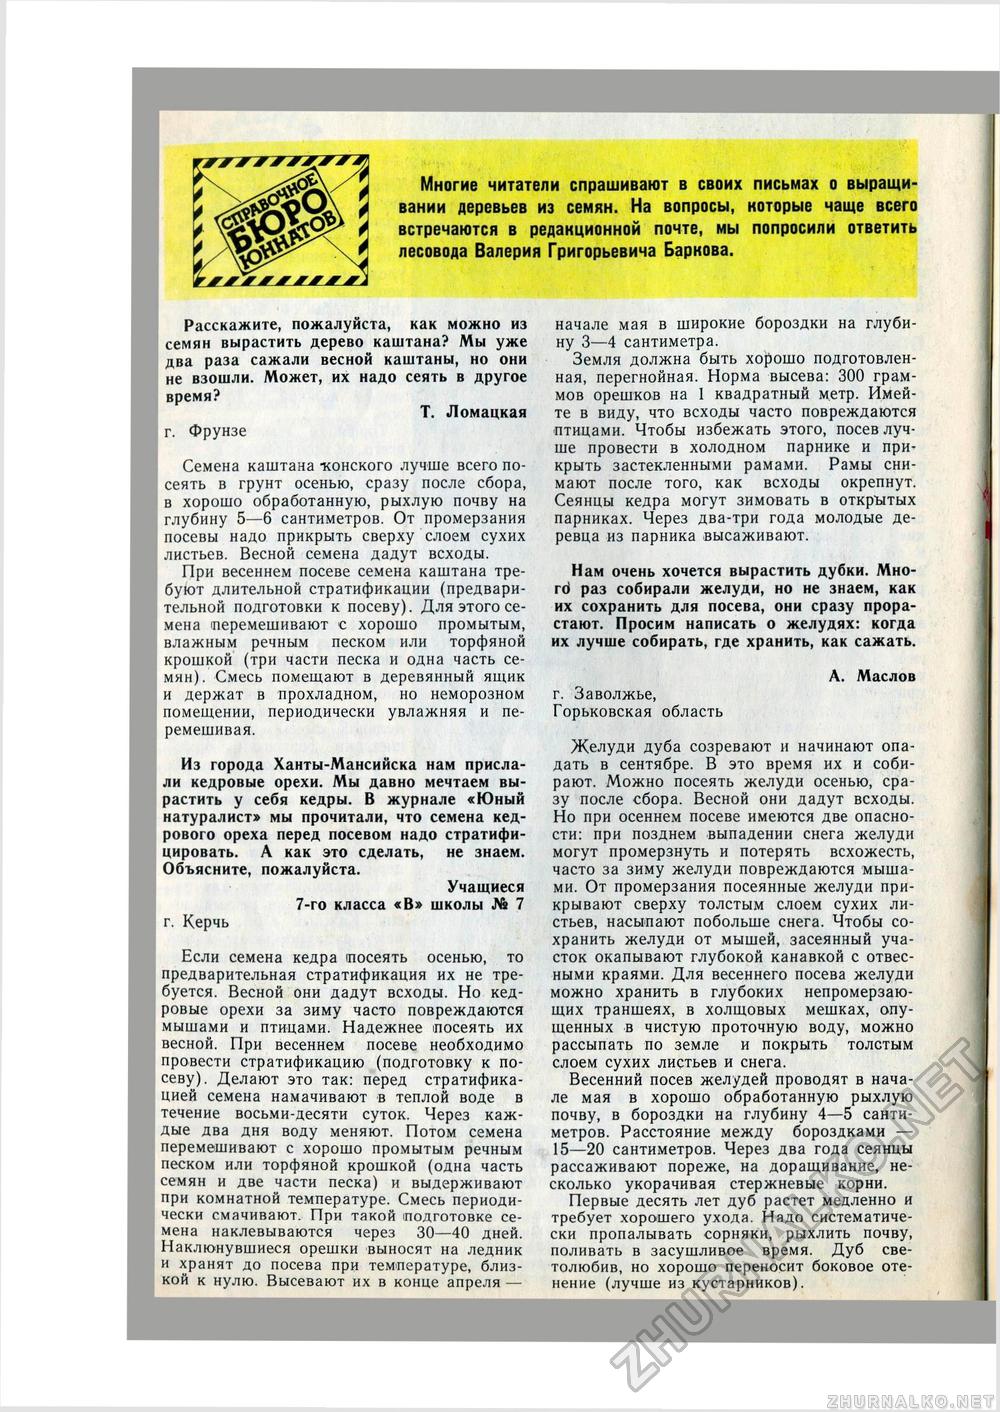   1978-08,  49